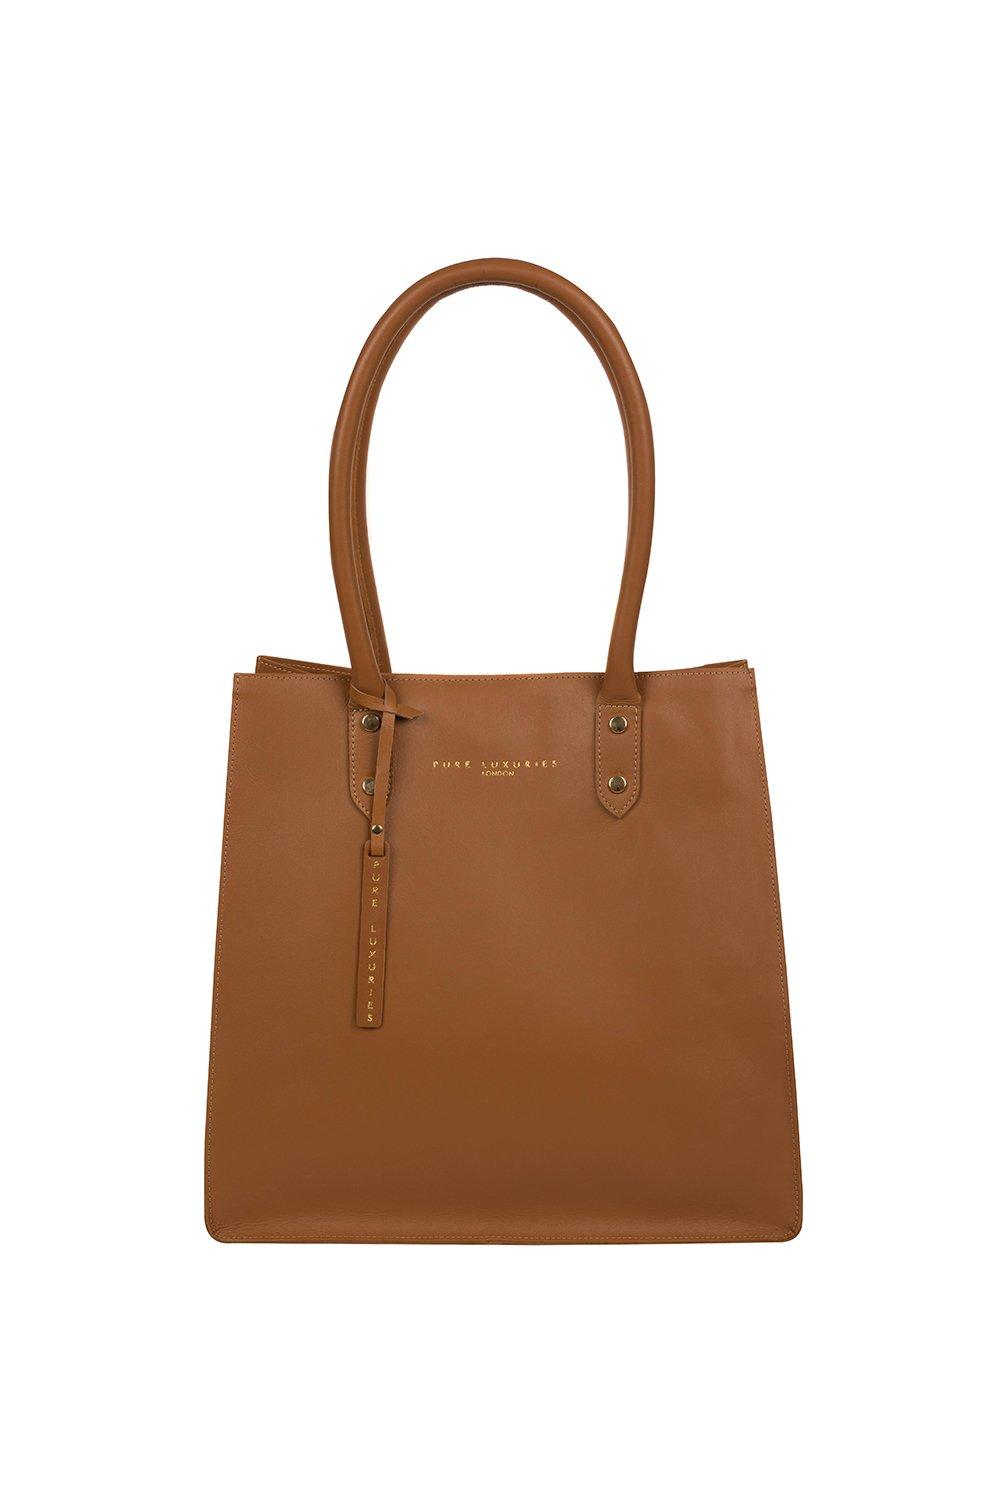 Сумка-шоппер Henley из кожи растительного дубления Pure Luxuries London, коричневый сумка тоут женская из мягкой пу кожи матовая 2020